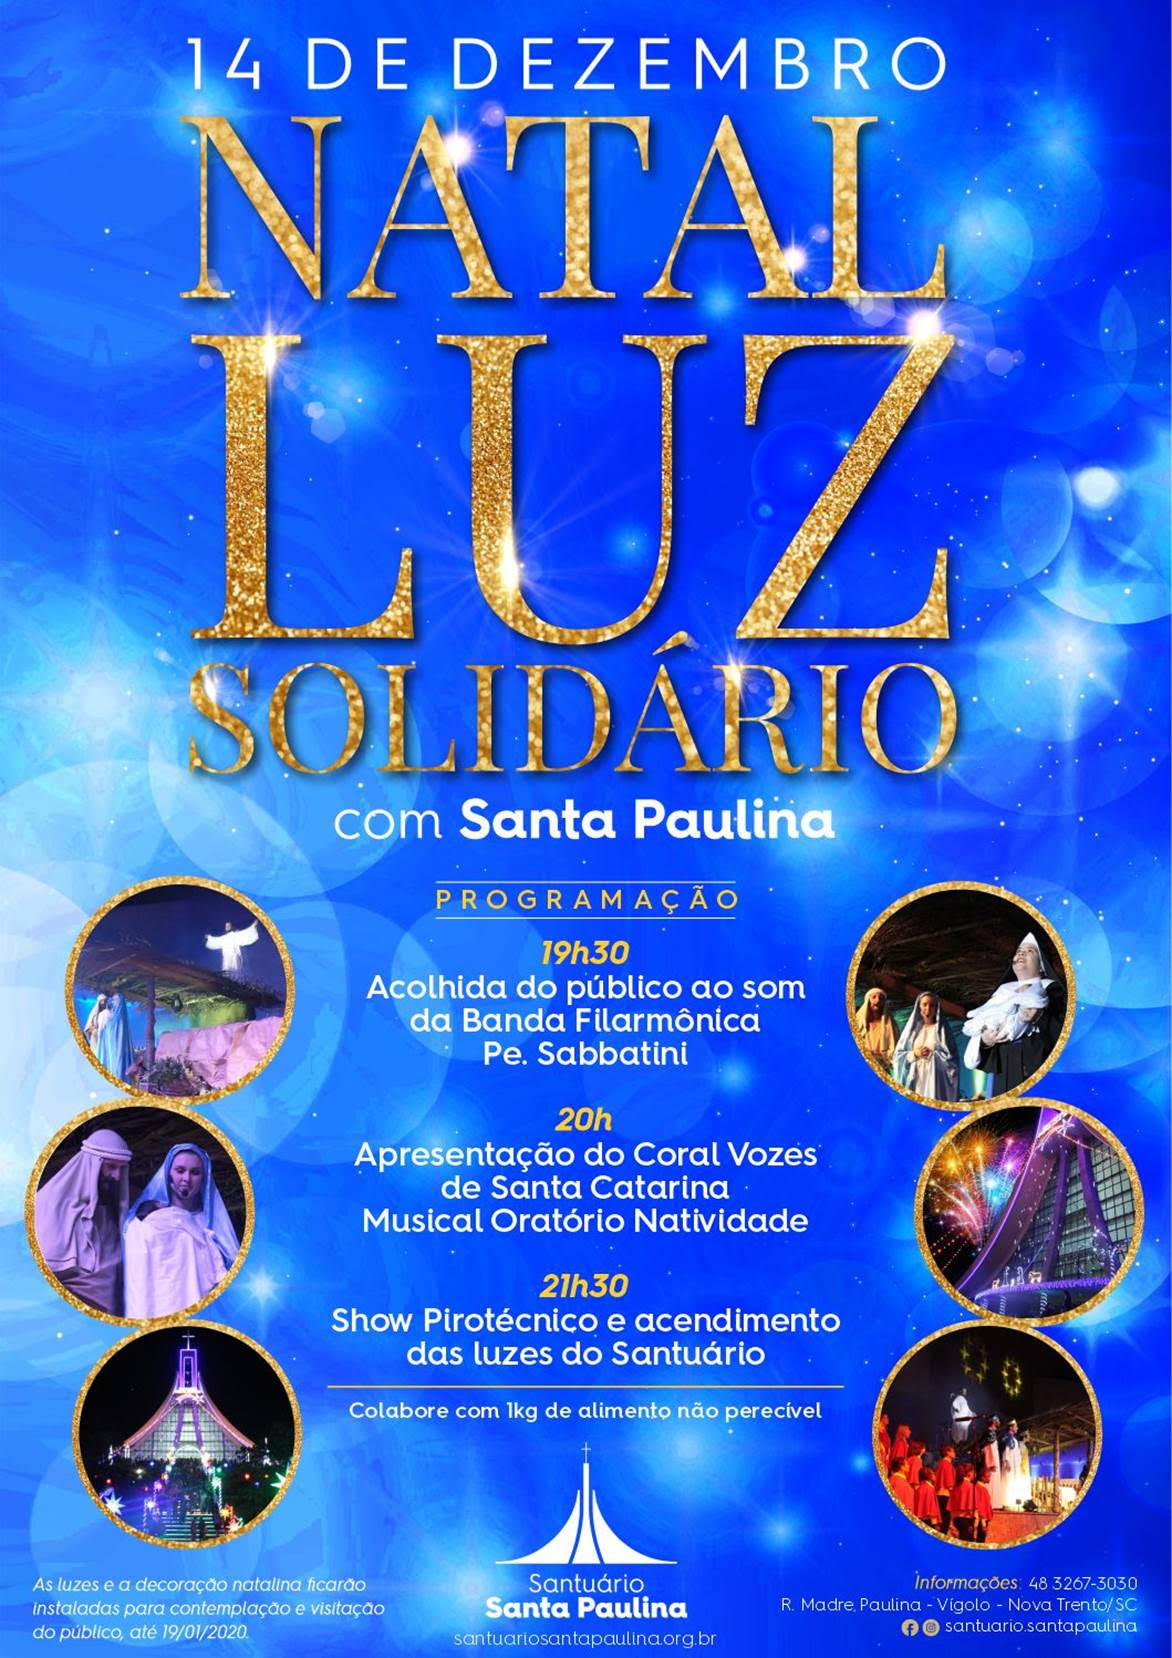 Natal Luz Solidário está sendo preparado no Santuário Santa Paulina